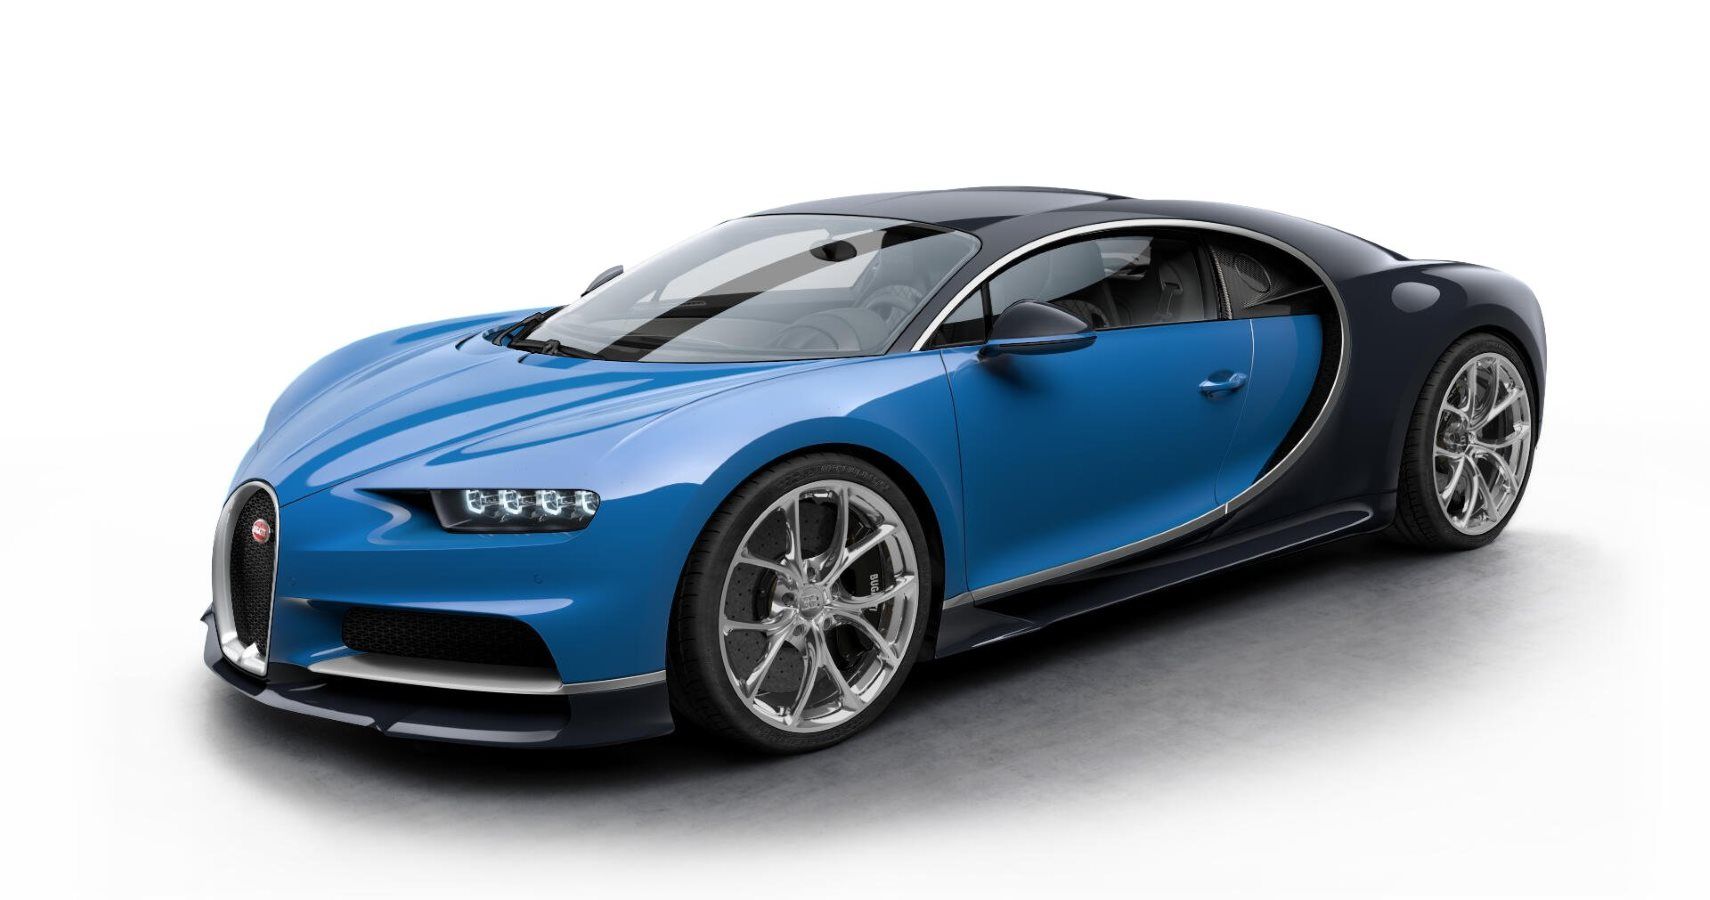 Bugatti Chiron Won't Be Pushed Past 261 MPH, Says CEO